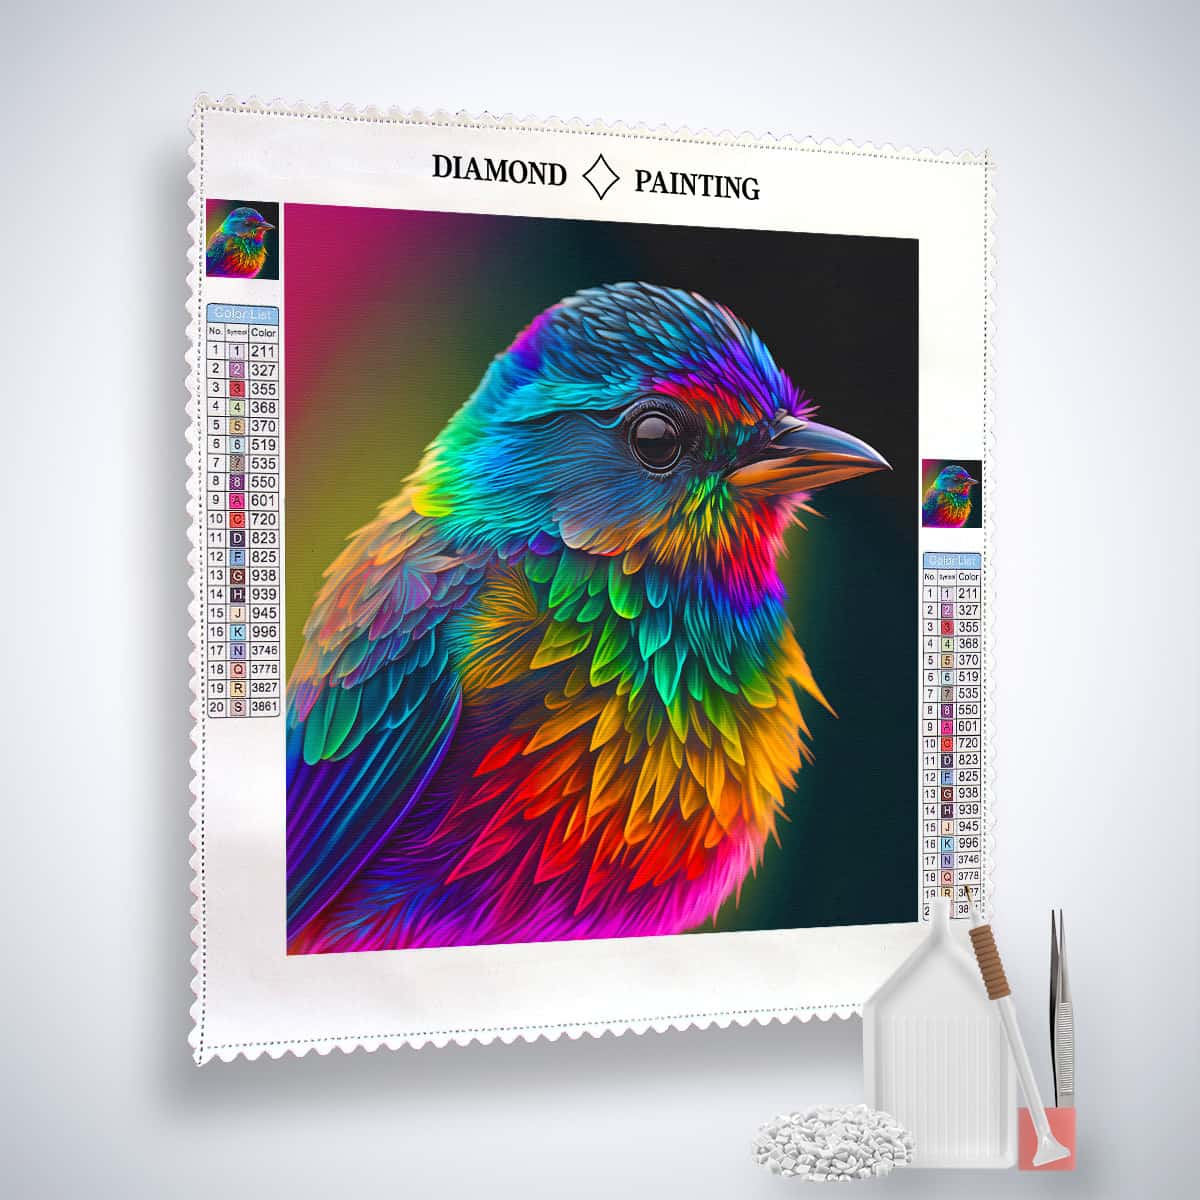 AB Diamond Painting - Bunter Vogel seitlich - gedruckt in Ultra-HD - AB Diamond, Neu eingetroffen, Quadratisch, Tiere, Vogel